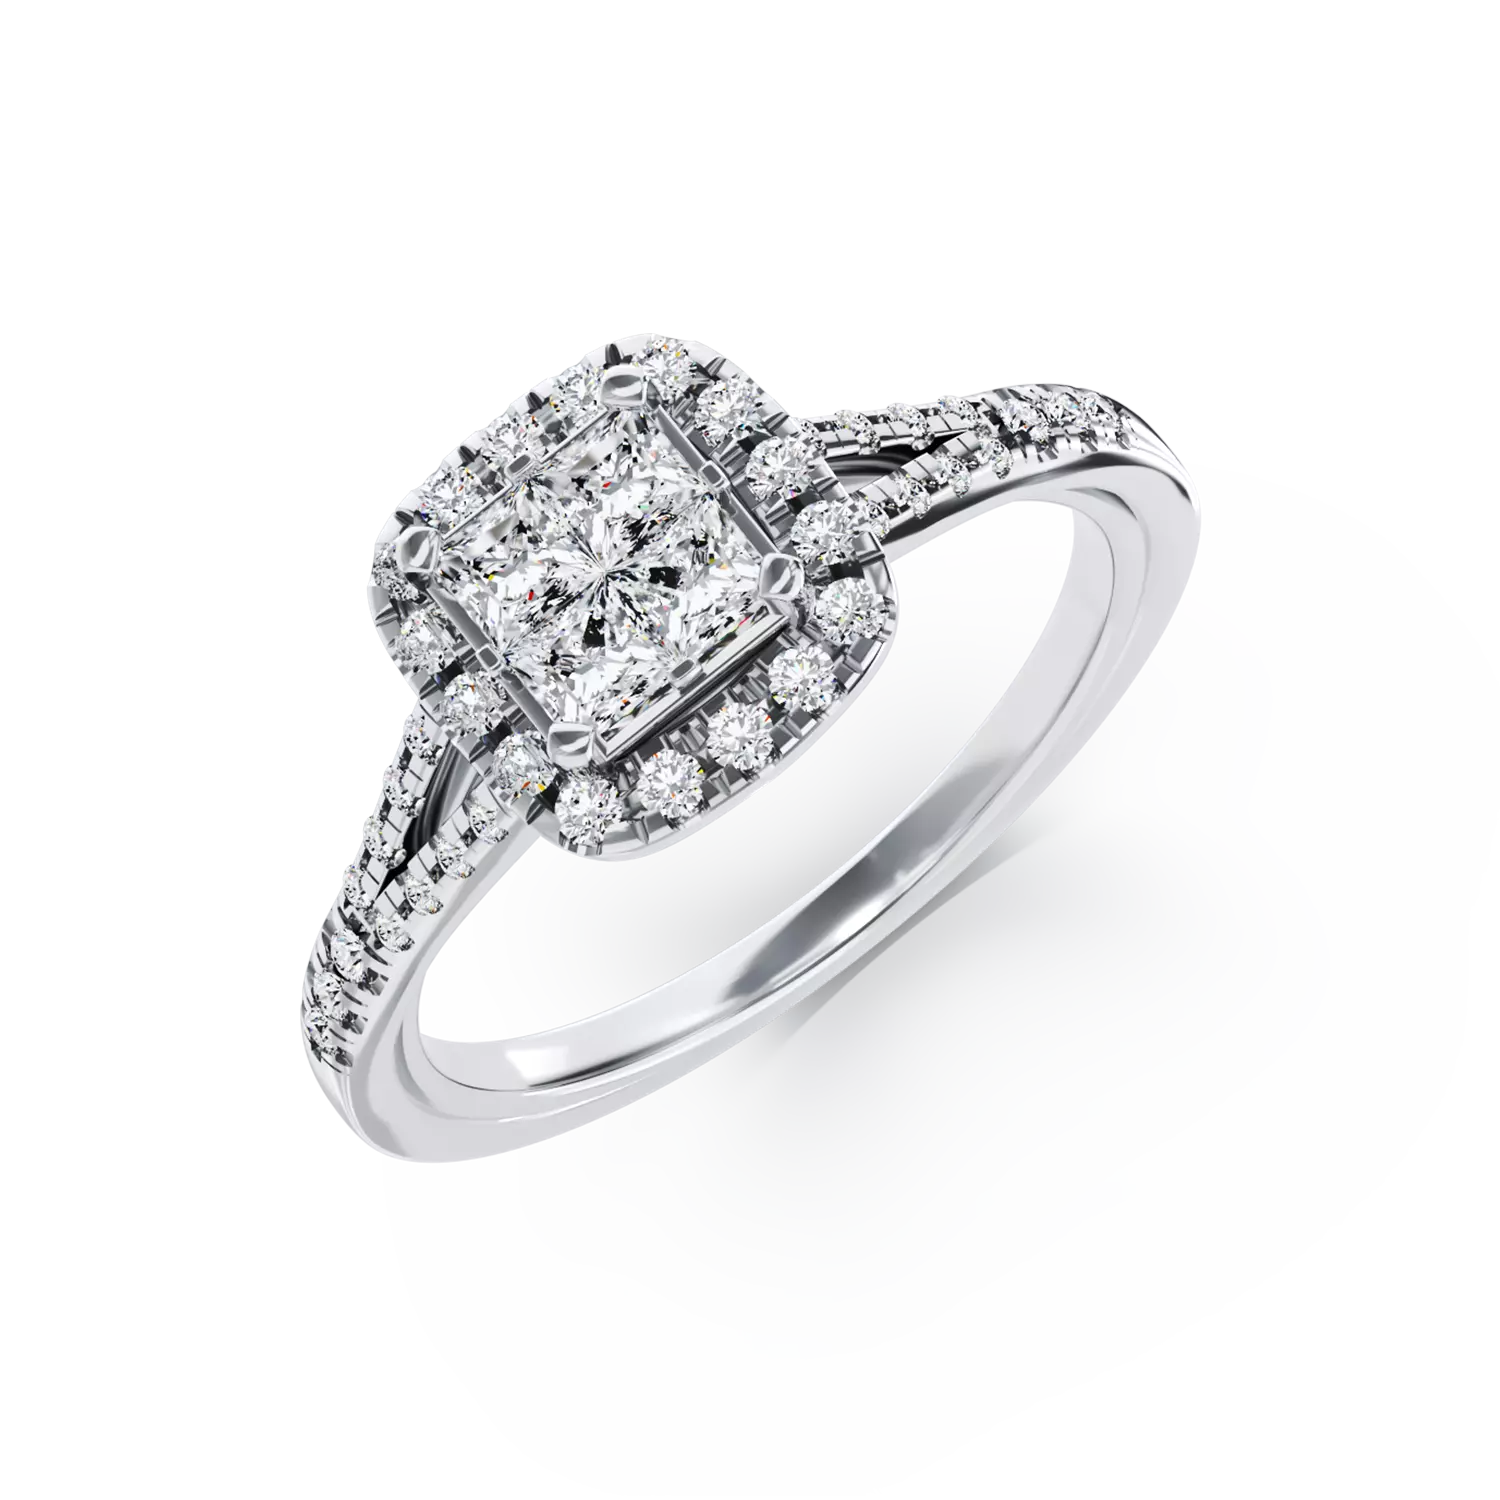 Eljegyzési gyűrű 18K-os fehér aranyból 0,24ct gyémánttal és 0,29ct gyémánttal. Gramm: 4,09